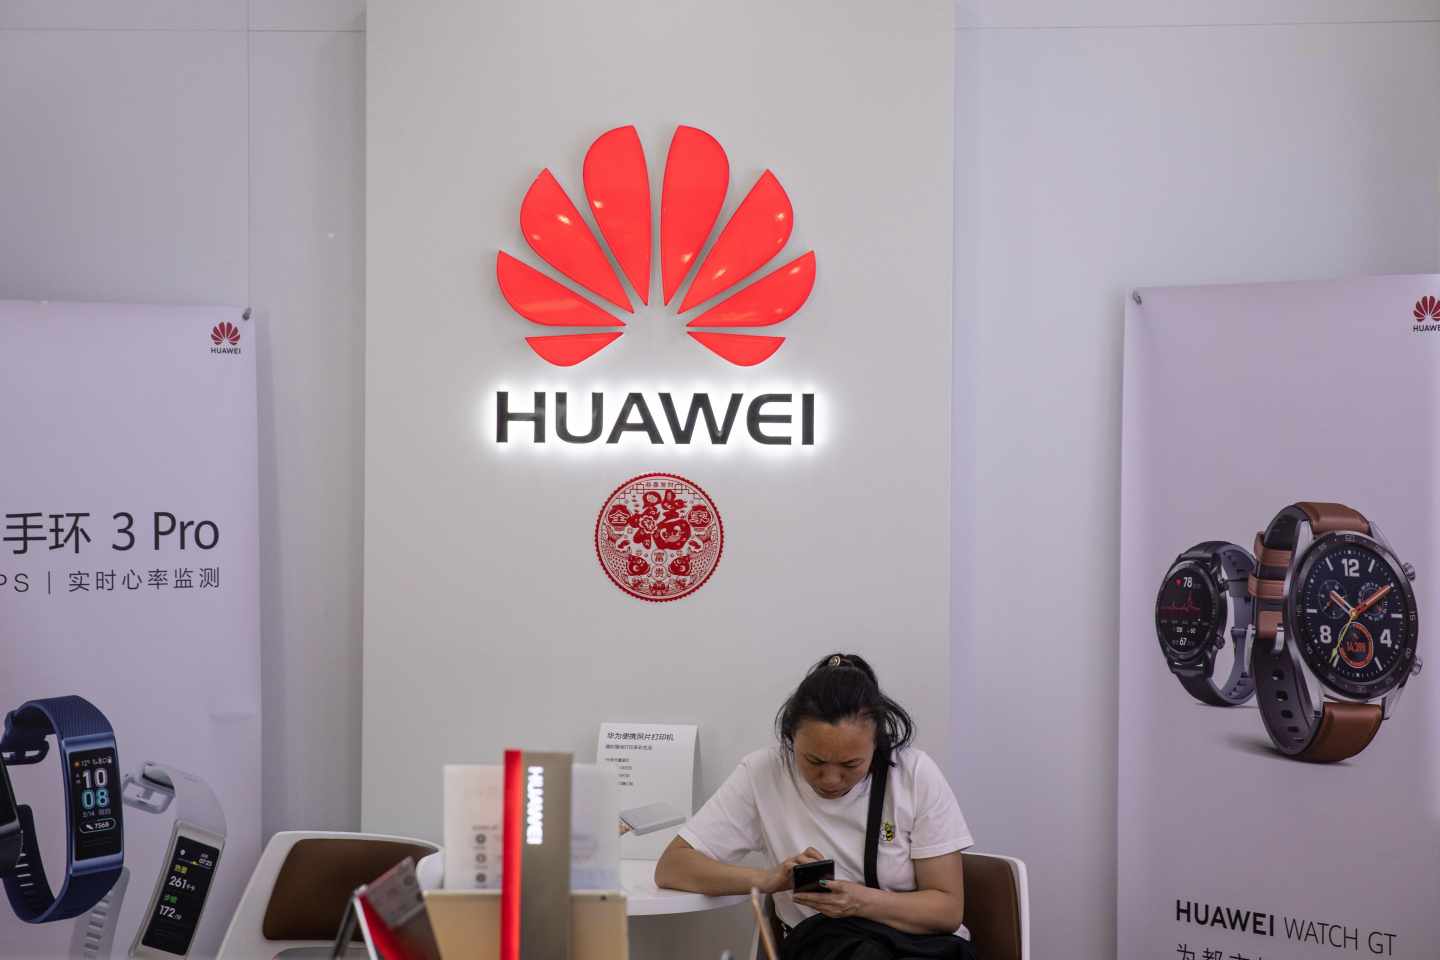 Estados Unidos da 90 días a Huawei para abandonar su actividad en el país